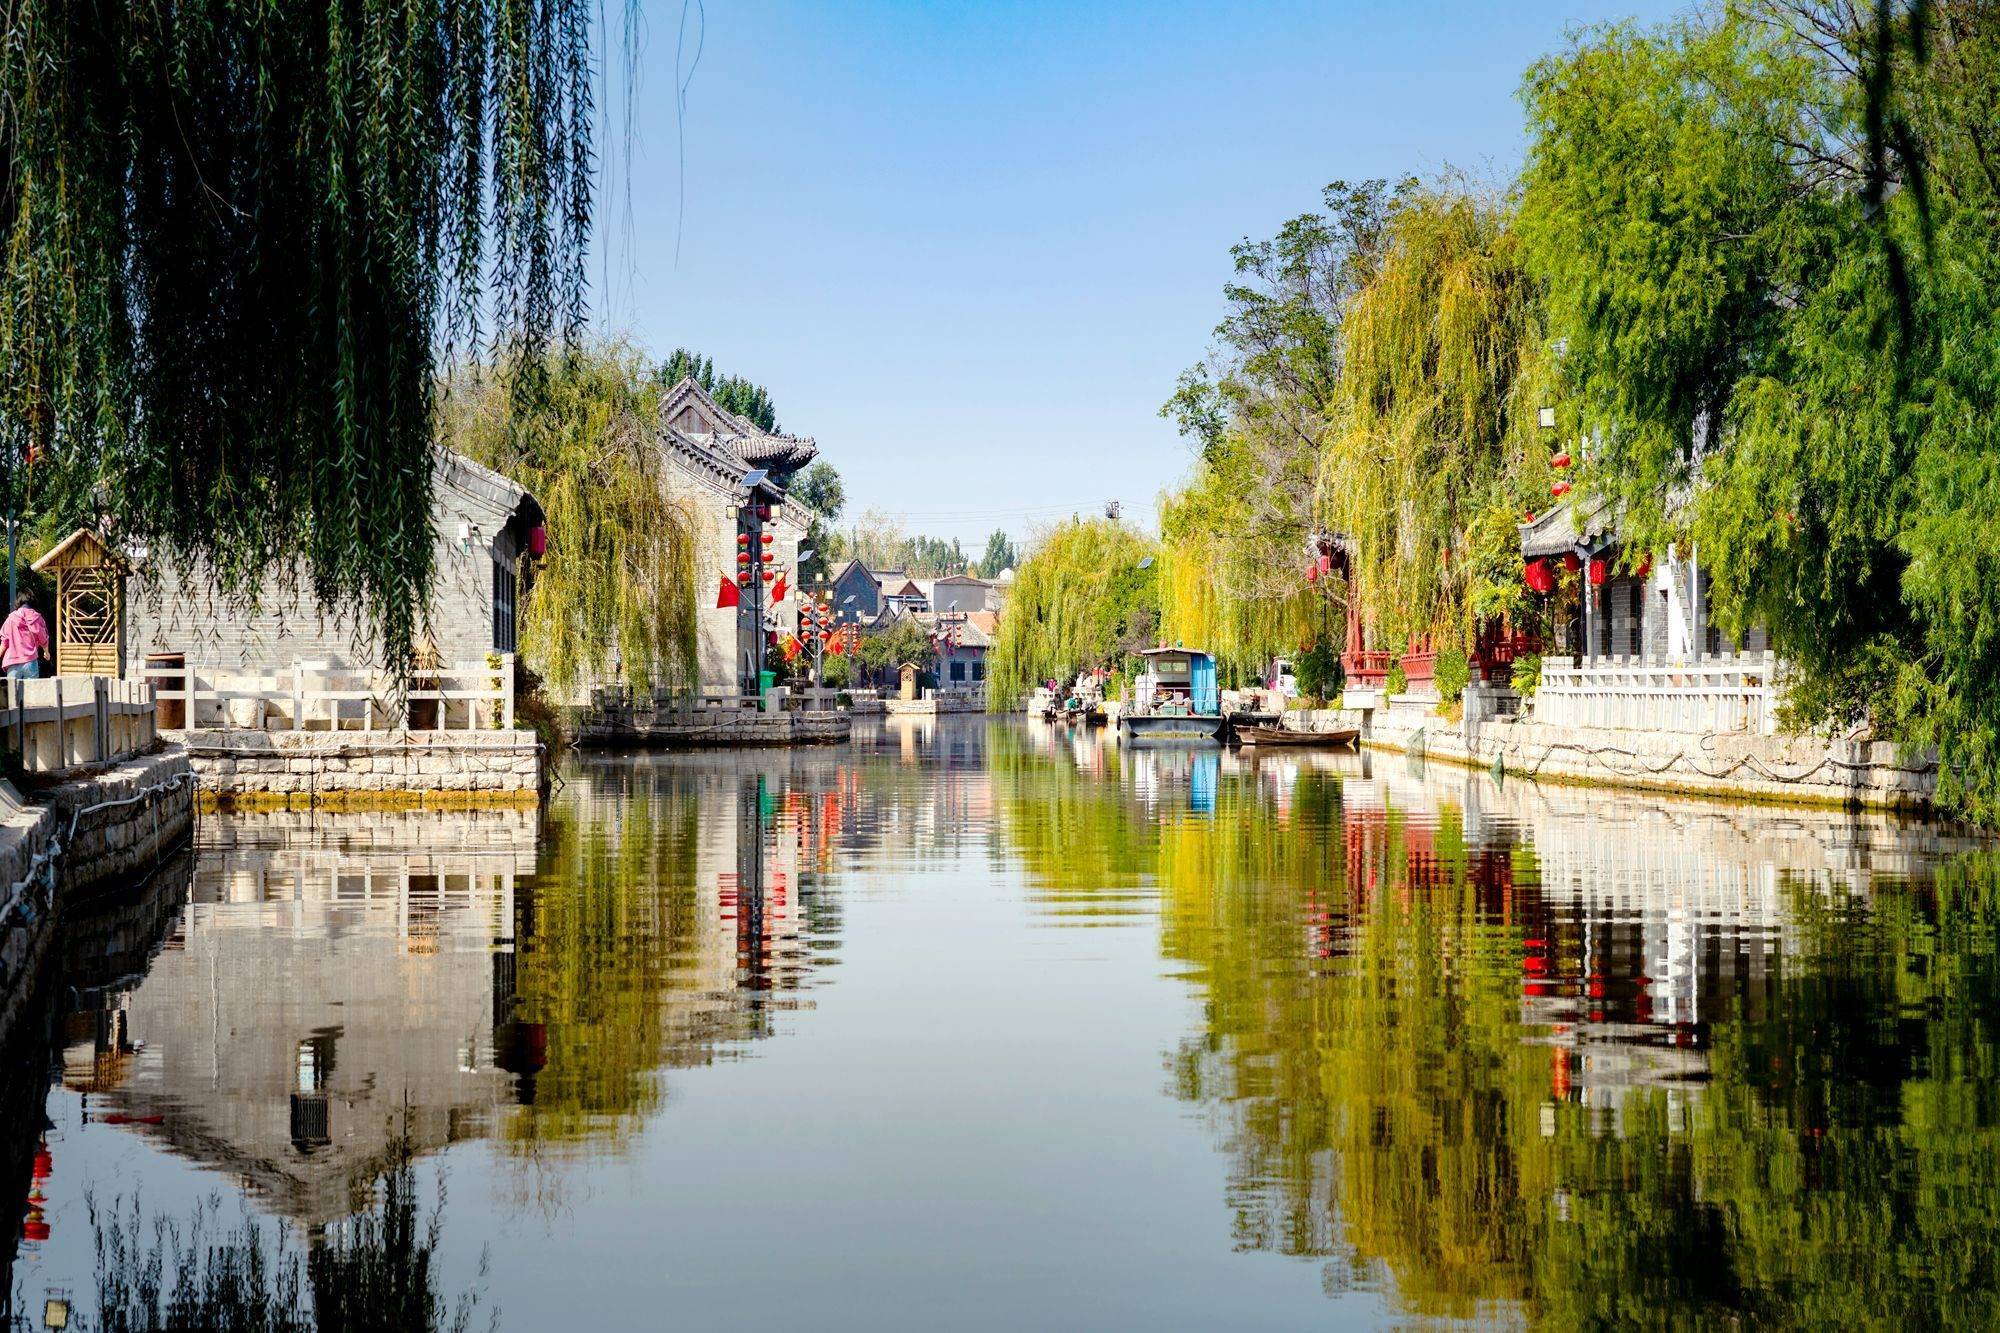 山东济宁南阳古镇,被誉为中国运河第一古镇,充满了江南风情